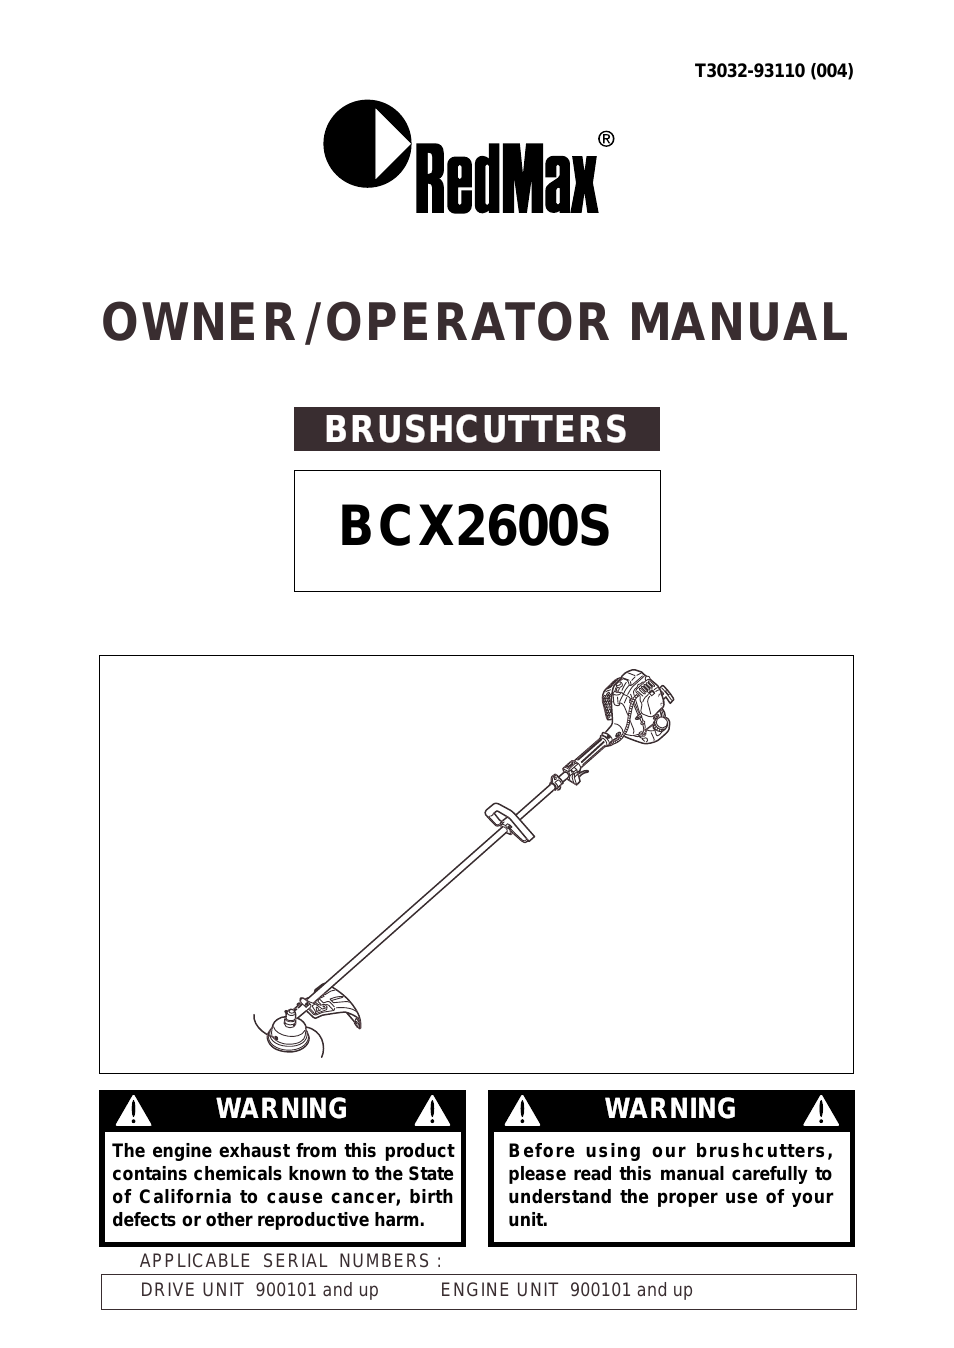 BCX2600S